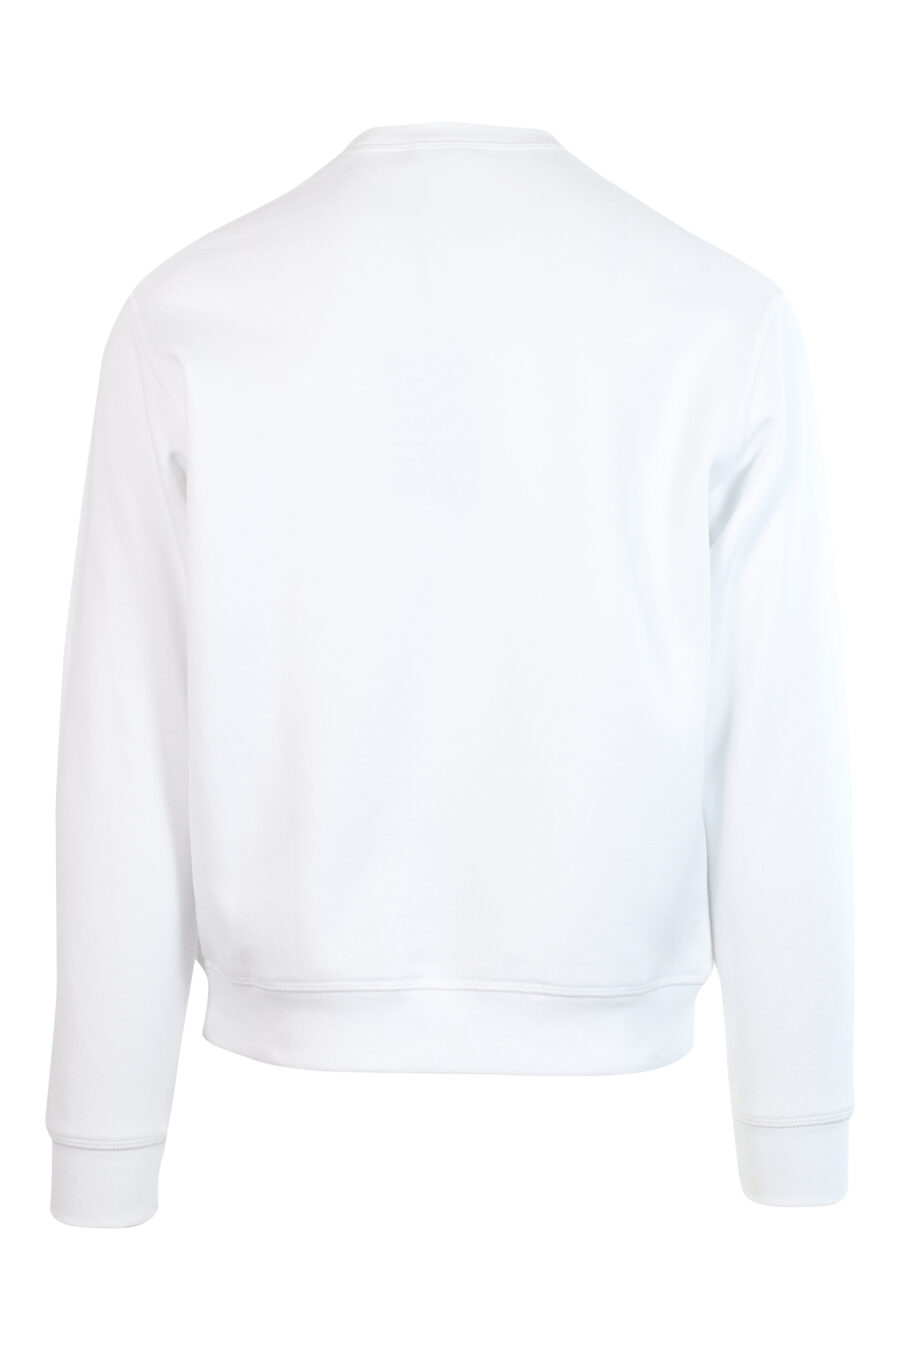 Sweat blanc avec maxilogo "icon pixeled" en turquoise et fuchsia - 8052134982228 2